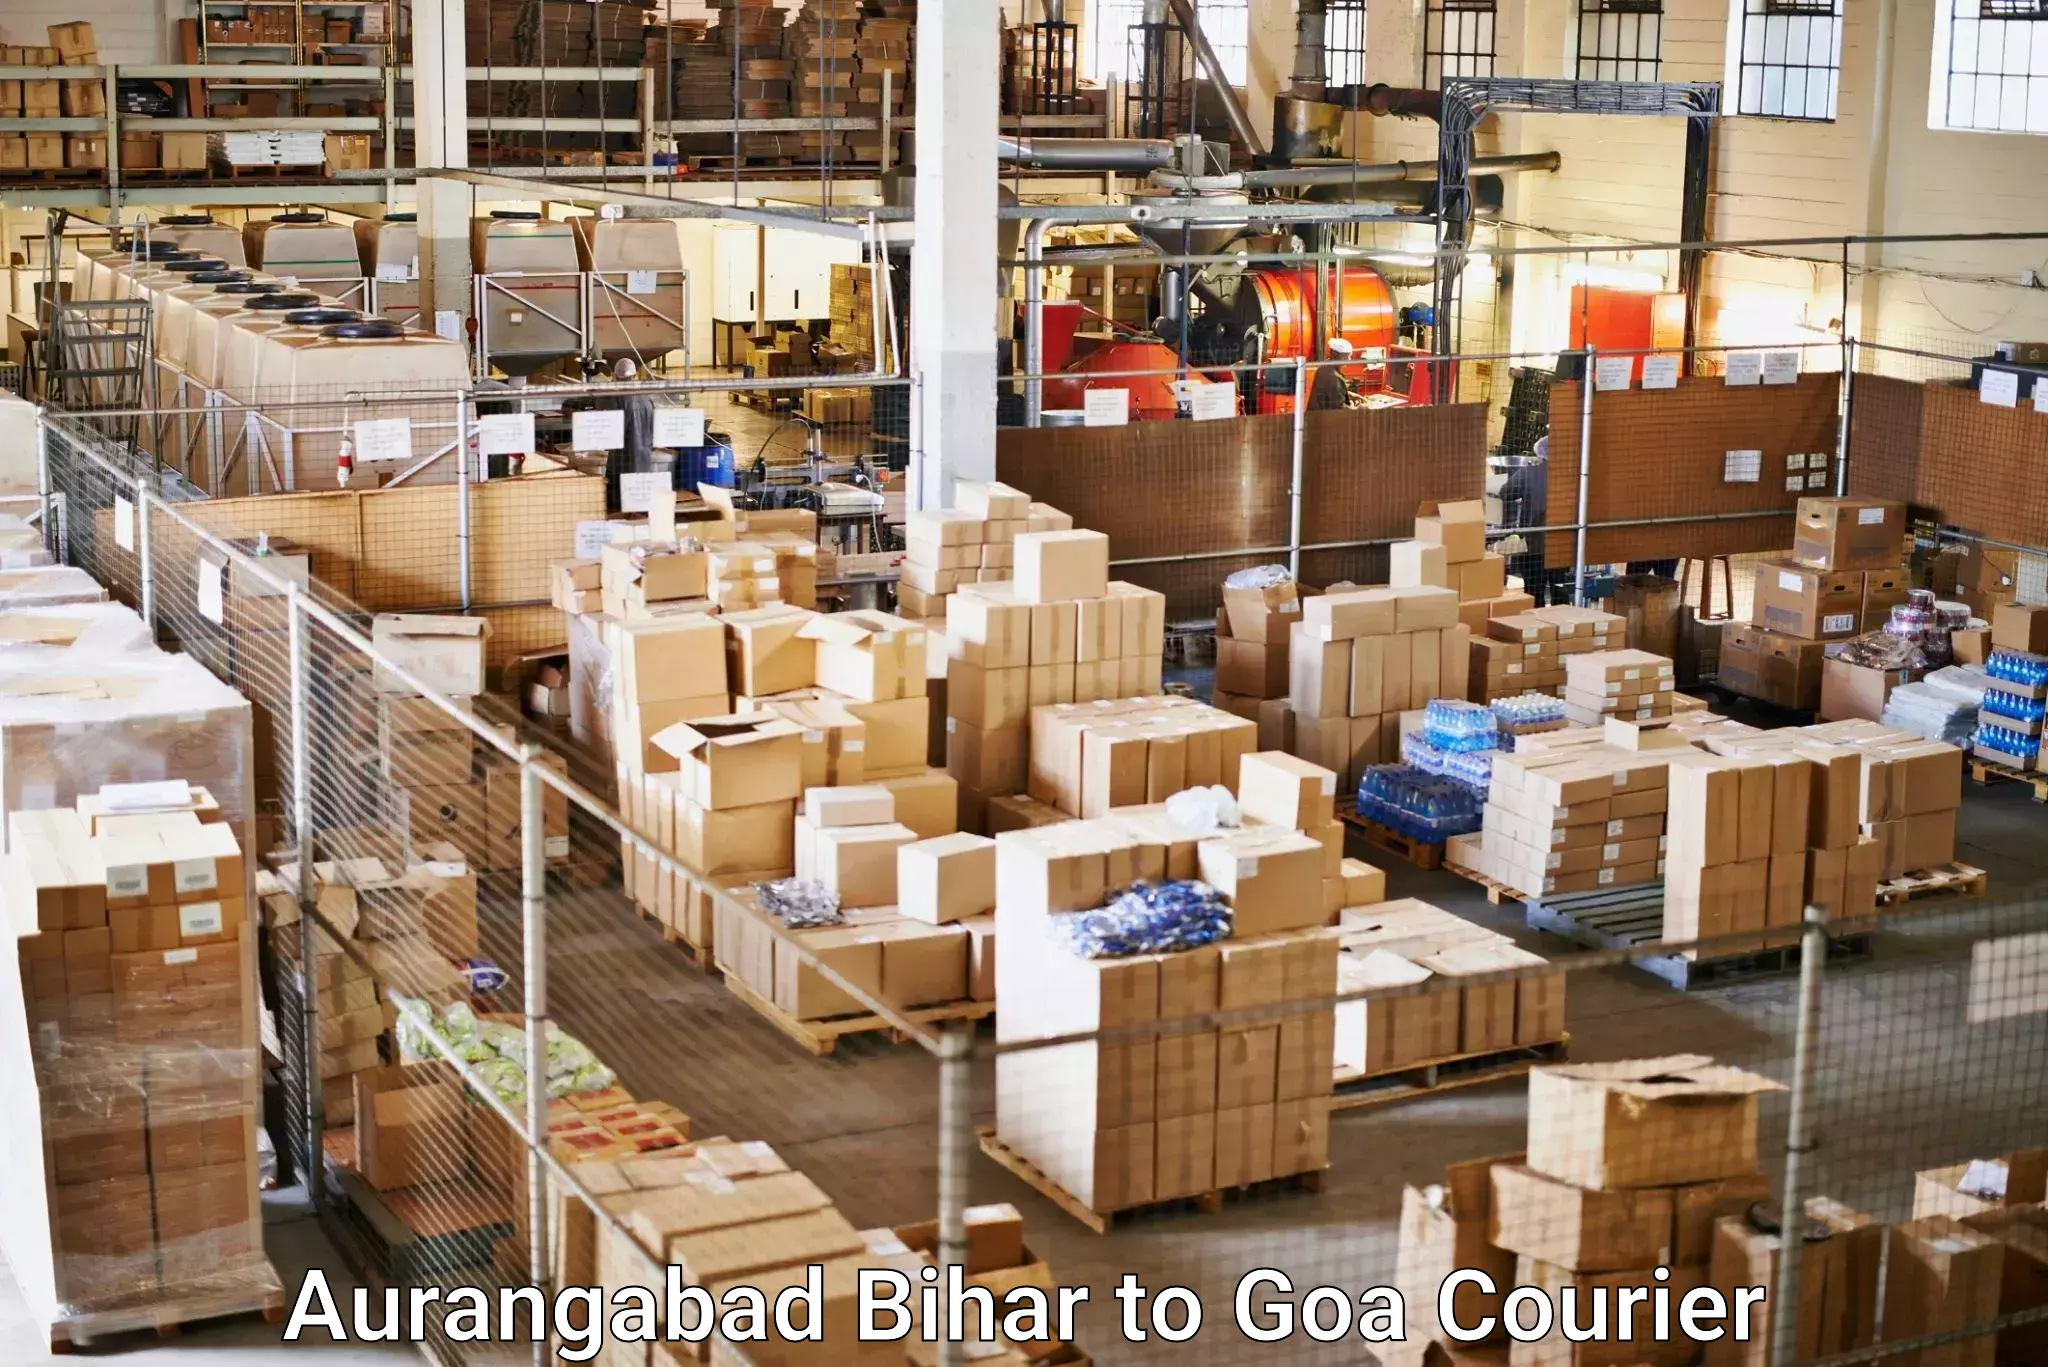 Efficient parcel service Aurangabad Bihar to Panaji